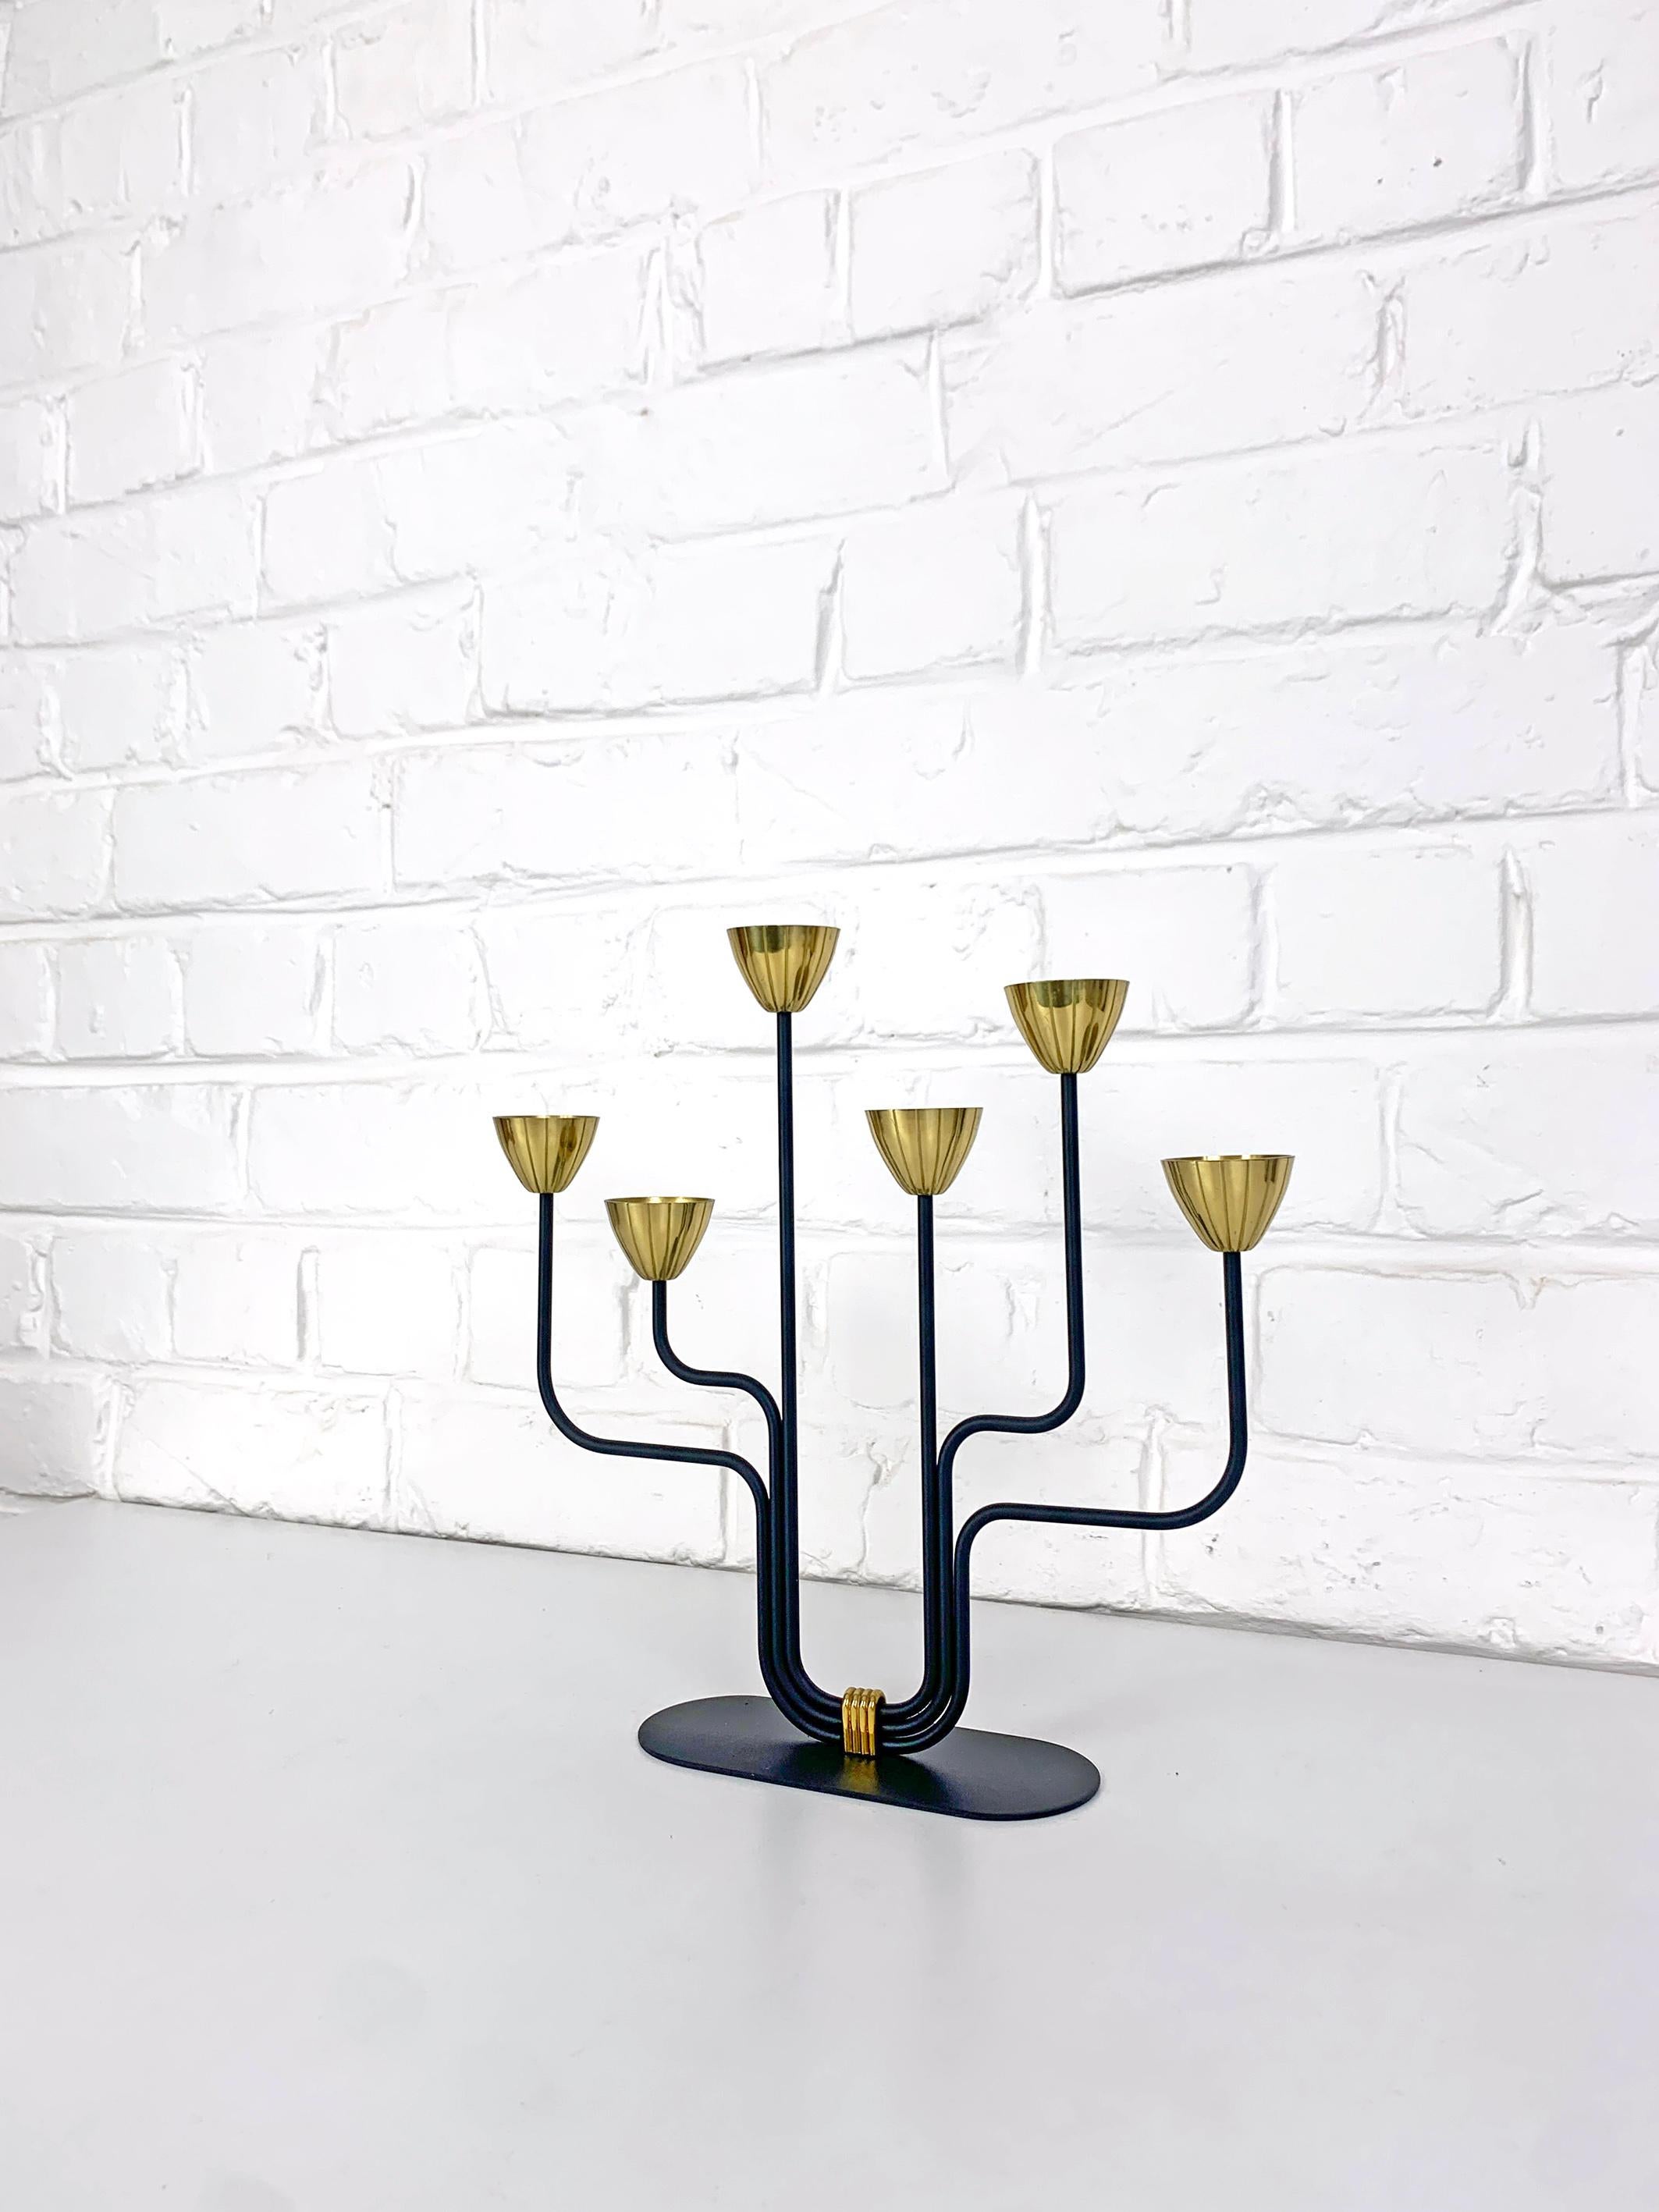 Schwedischer modernistischer Kerzenhalter von Gunnar Ander. Produziert von Ystad-Metall in der schwedischen Stadt Ystad. 

Stilisierte Blumen aus Messing auf 6 asymmetrischen, schwarz emaillierten Stahlarmen. Dies ist das kleinere Modell.

Beide